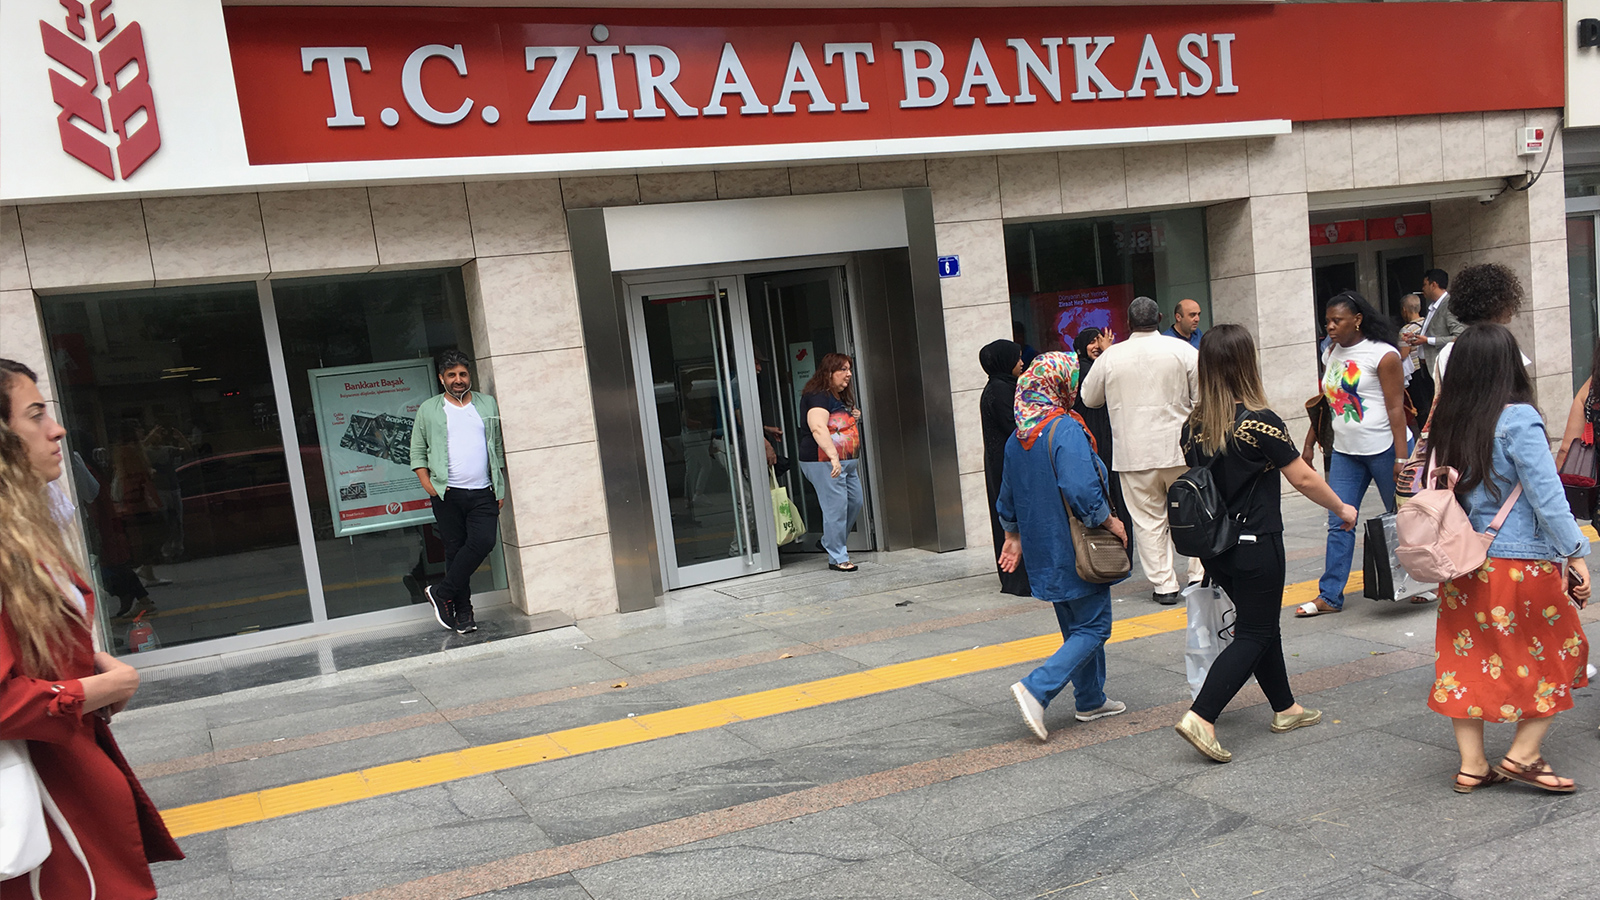 ‪بنك زراعات أكبر البنوك التركية وأقدمها‬ (الجزيرة)